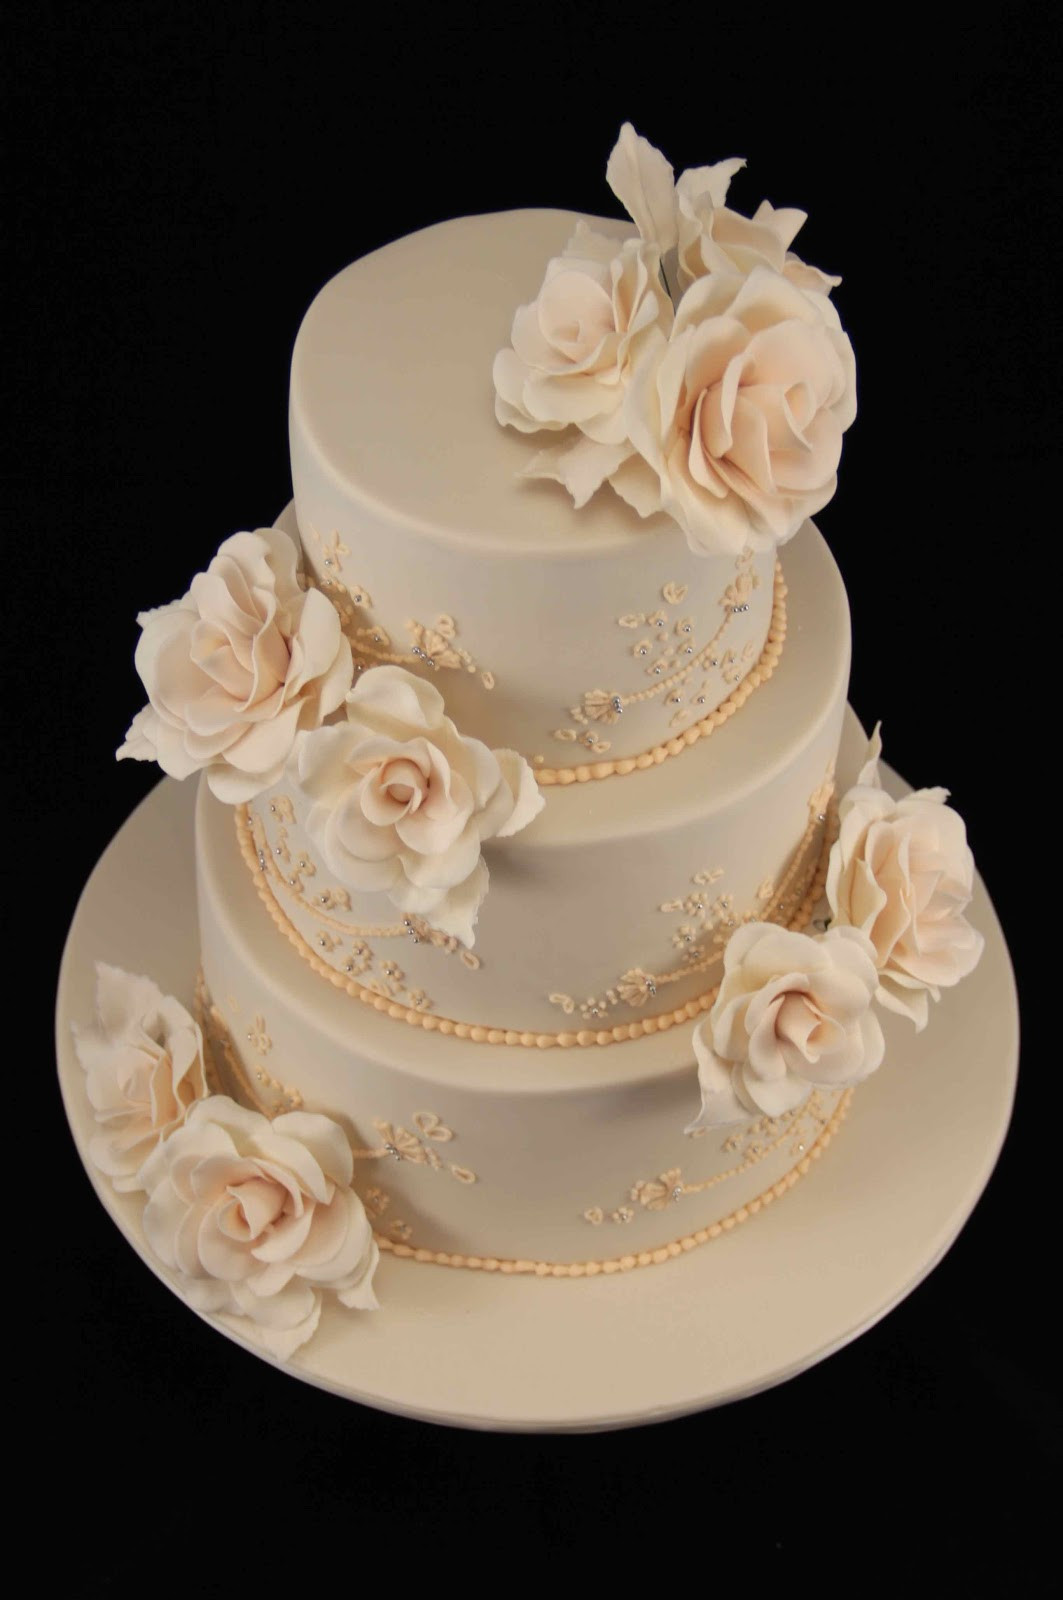 Roses Wedding Cakes
 Bakerz Dad Rose Wedding Cake